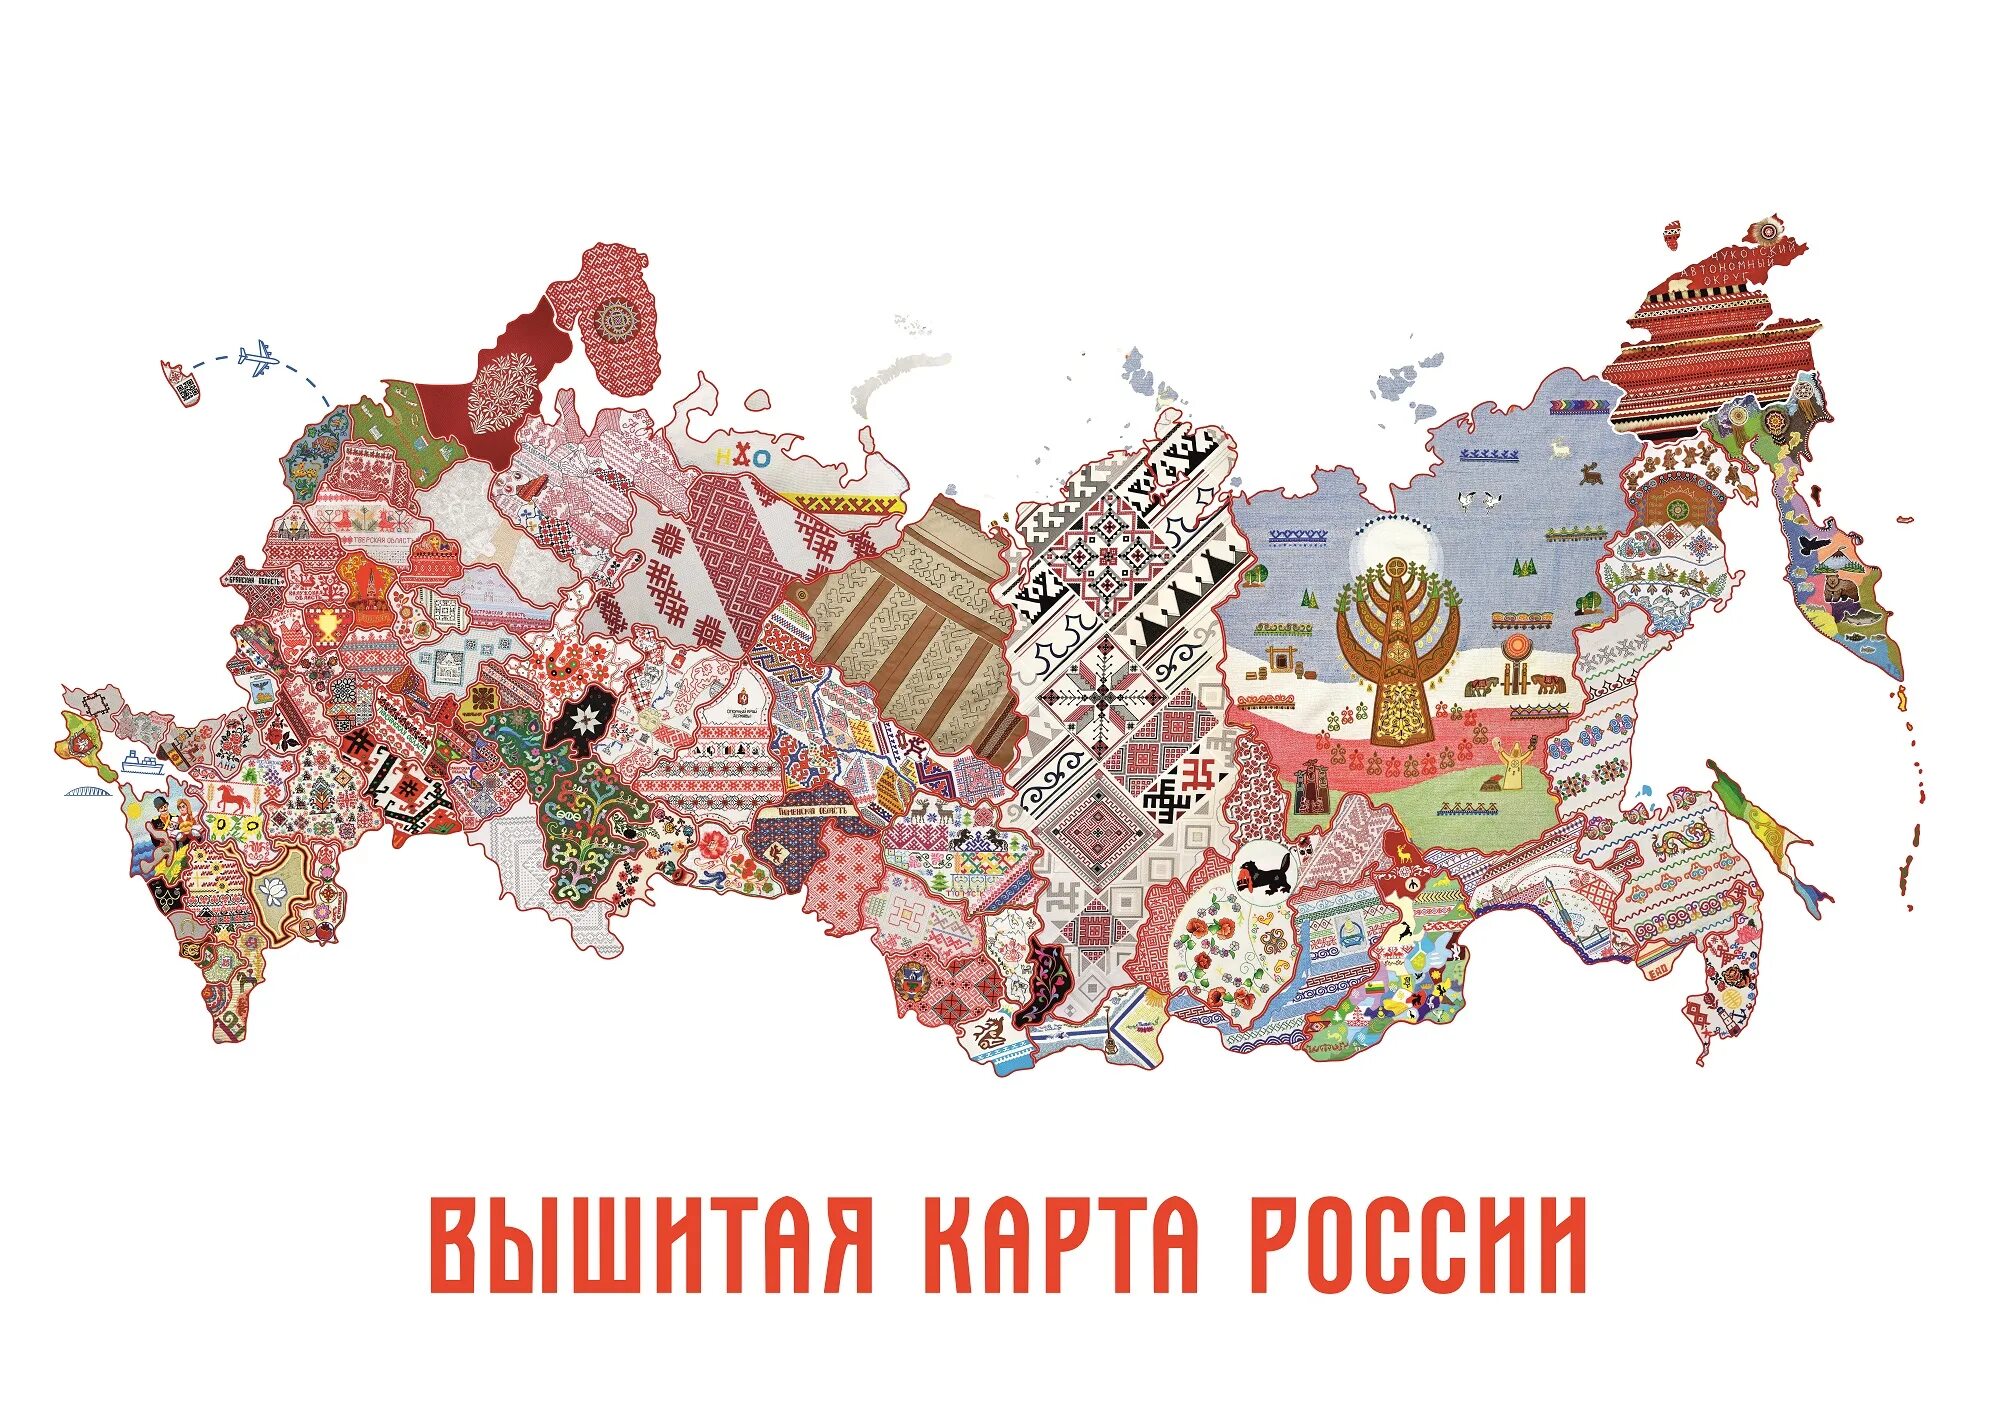 Вышитая карта России 2022 Чувашия. Карта России. Вышитая карта России 2022 года. Вышитая карта россии проект чувашия